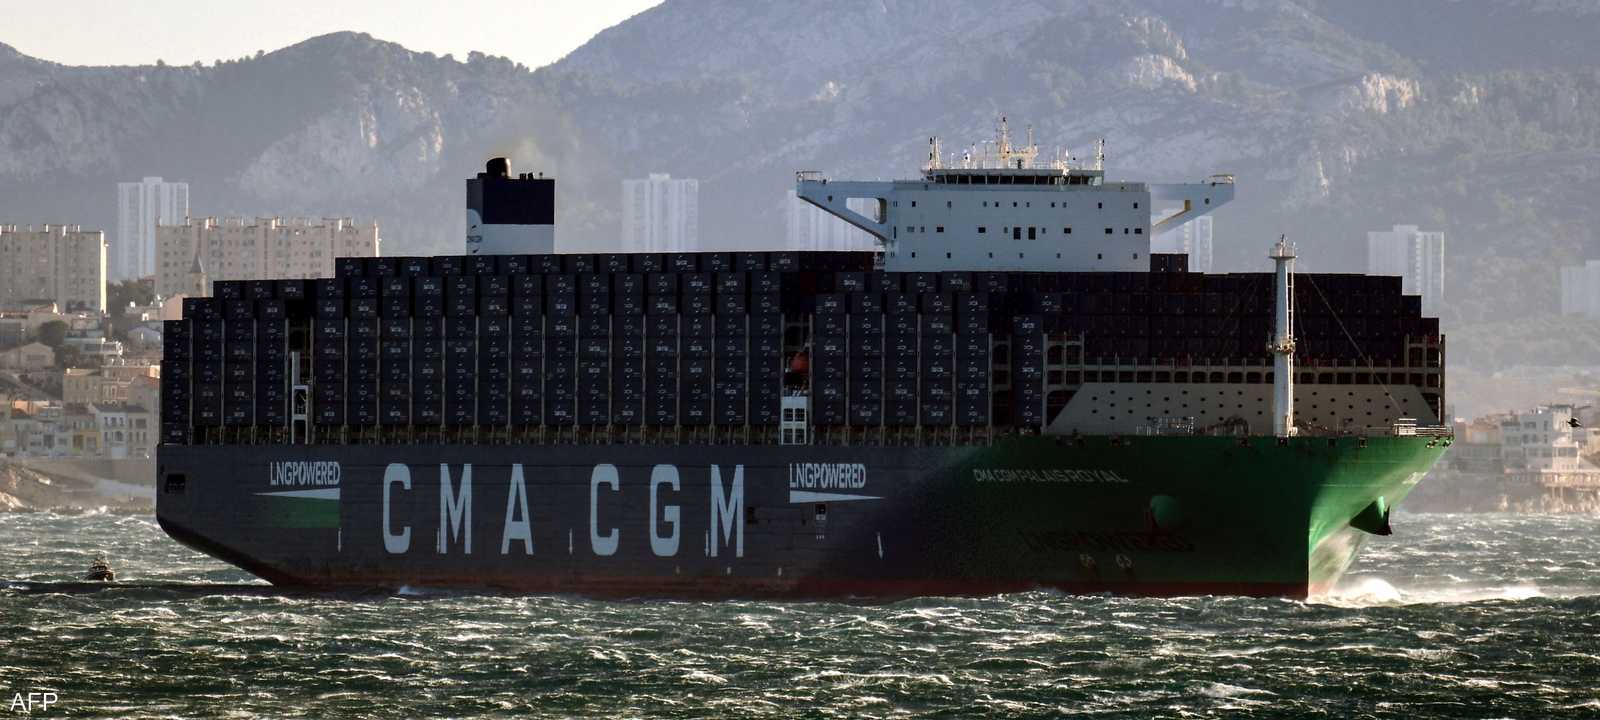 هجمات البحر الأحمر تعصف بأرباح "CMA CGM" الفرنسية